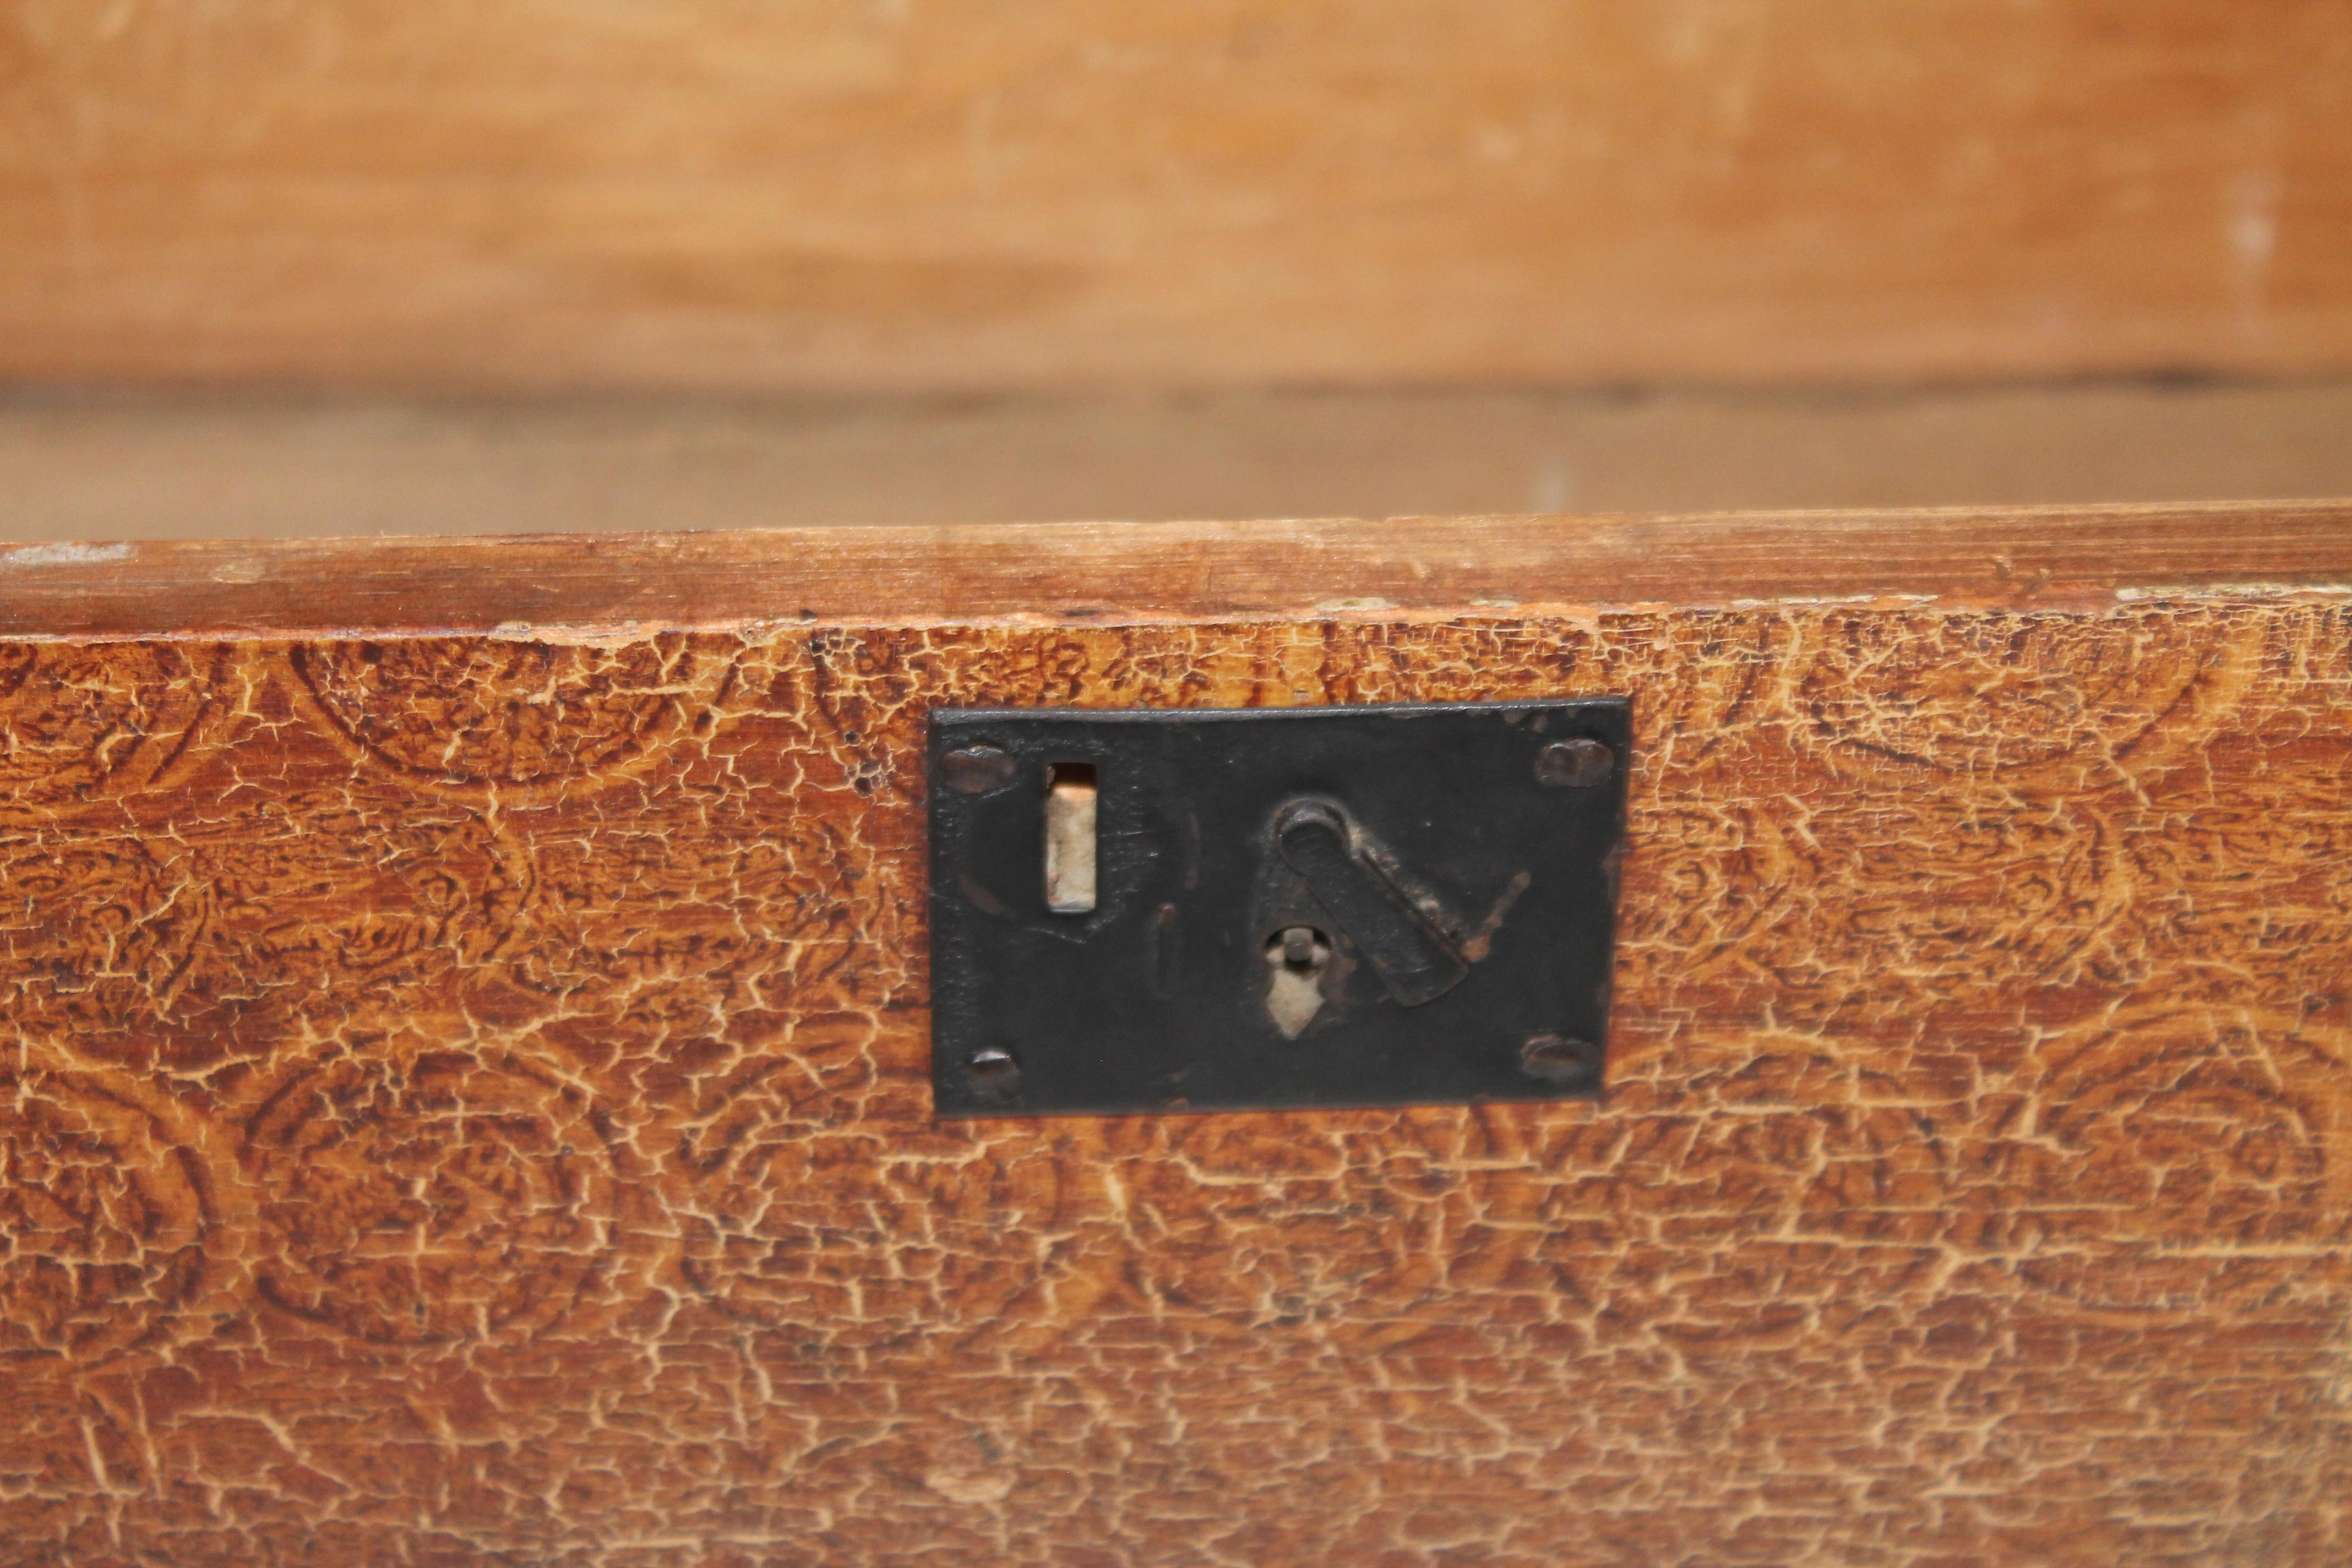 Diese aus dem 19. Jahrhundert stammende, bittersüß bemalte Truhe mit Kuppelaufsatz hat ein taubenschwänziges Gehäuse. Diese Kiste aus Neuengland wurde wahrscheinlich für Wertsachen und/oder Dokumente verwendet.